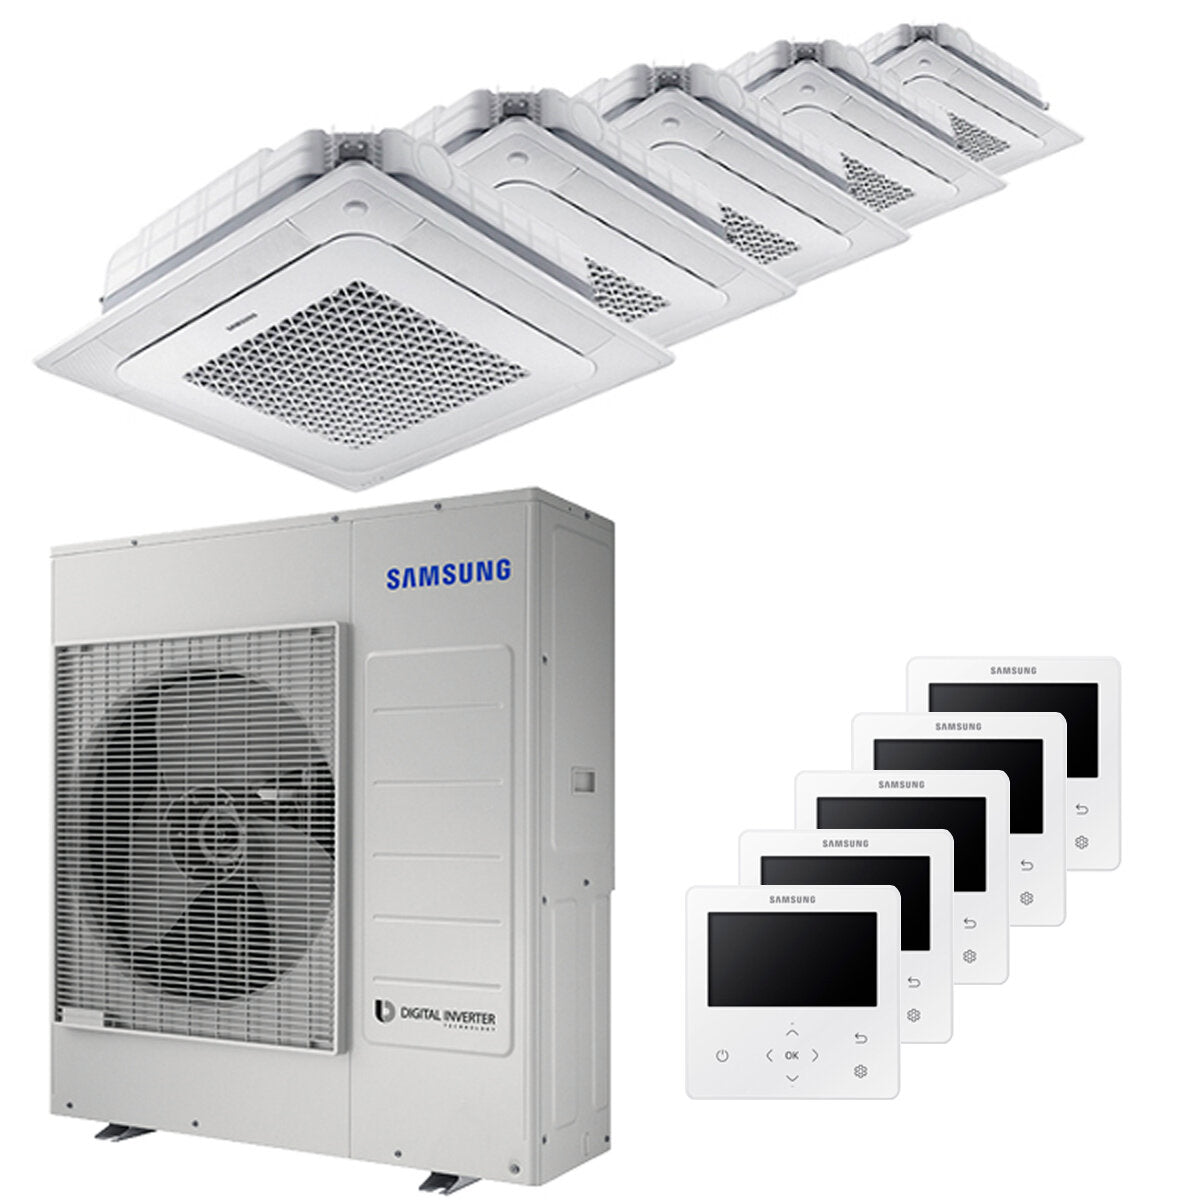 Samsung Climatiseur Windfree 4 voies penta split 7000 + 9000 + 12000 + 12000 + 12000 BTU inverter A++ unité extérieure 10,0 kW